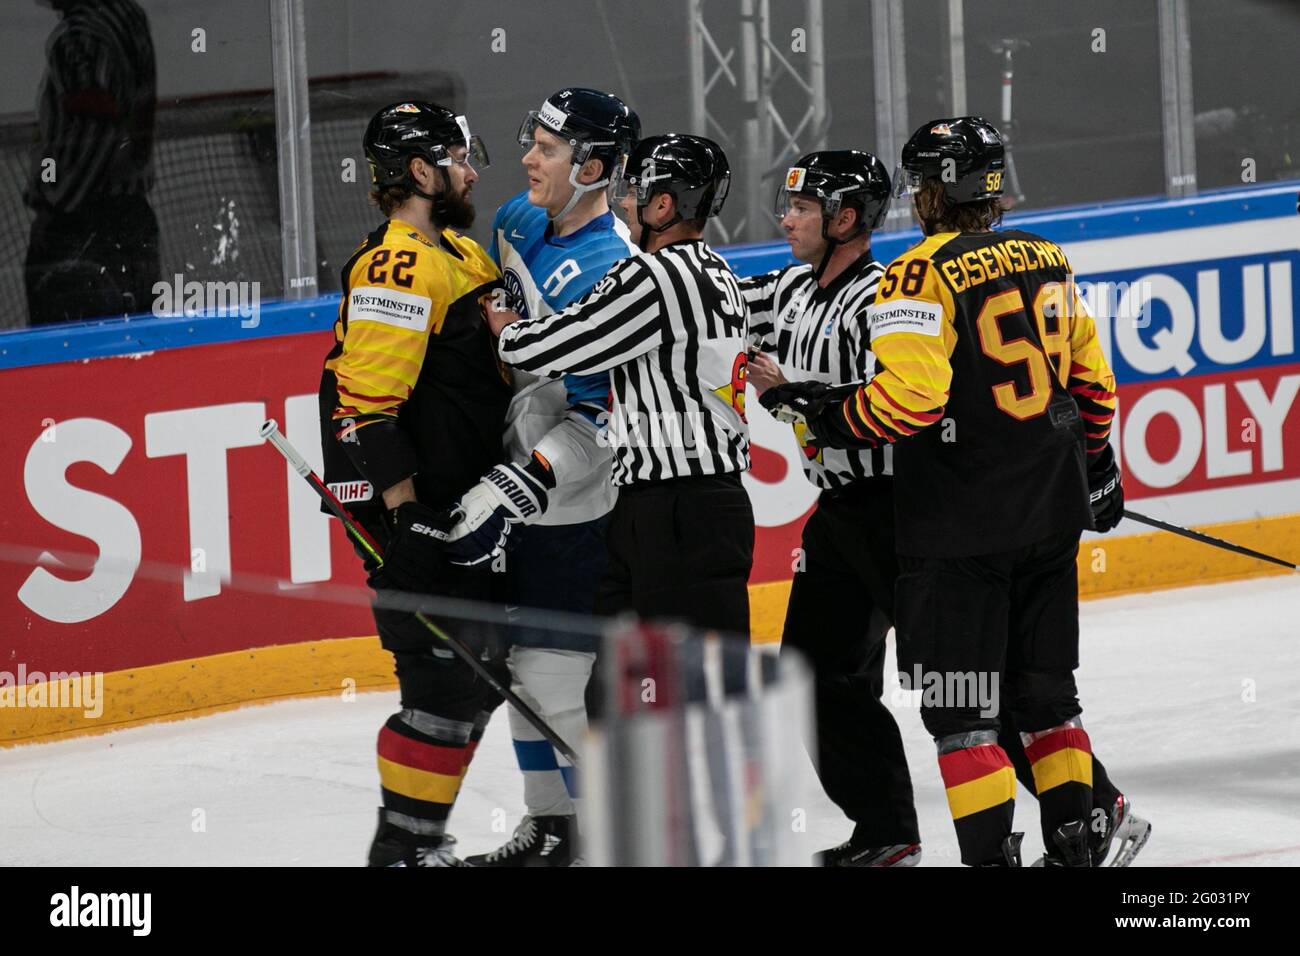 Riga, Latvia. 29th May, 2021. Germany vs Finland, Ice Hockey in Riga, Latvia, May 29 2021 Credit: Independent Photo Agency/Alamy Live News Stock Photo